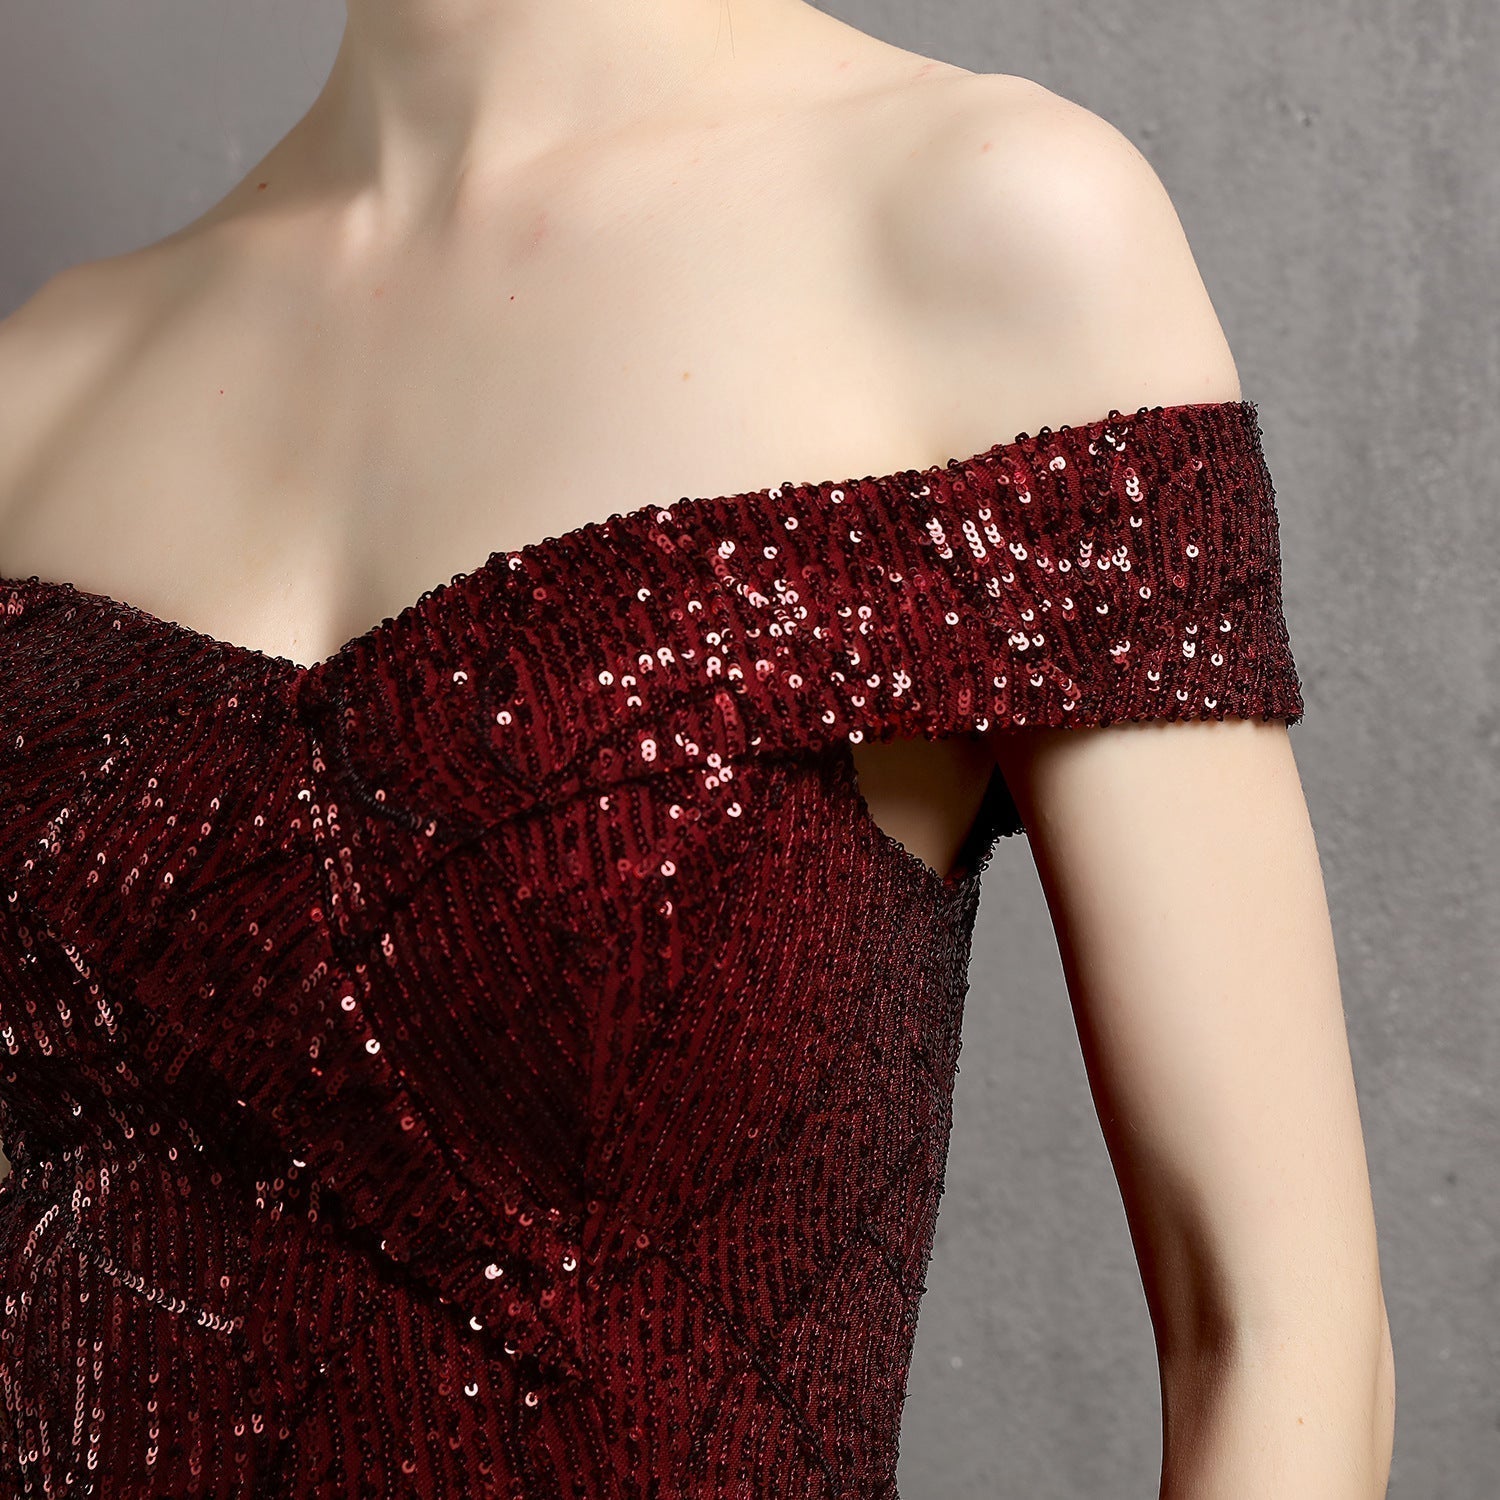 Clara Glitter Off the Shoulder Split Dress For Prom Oshnow